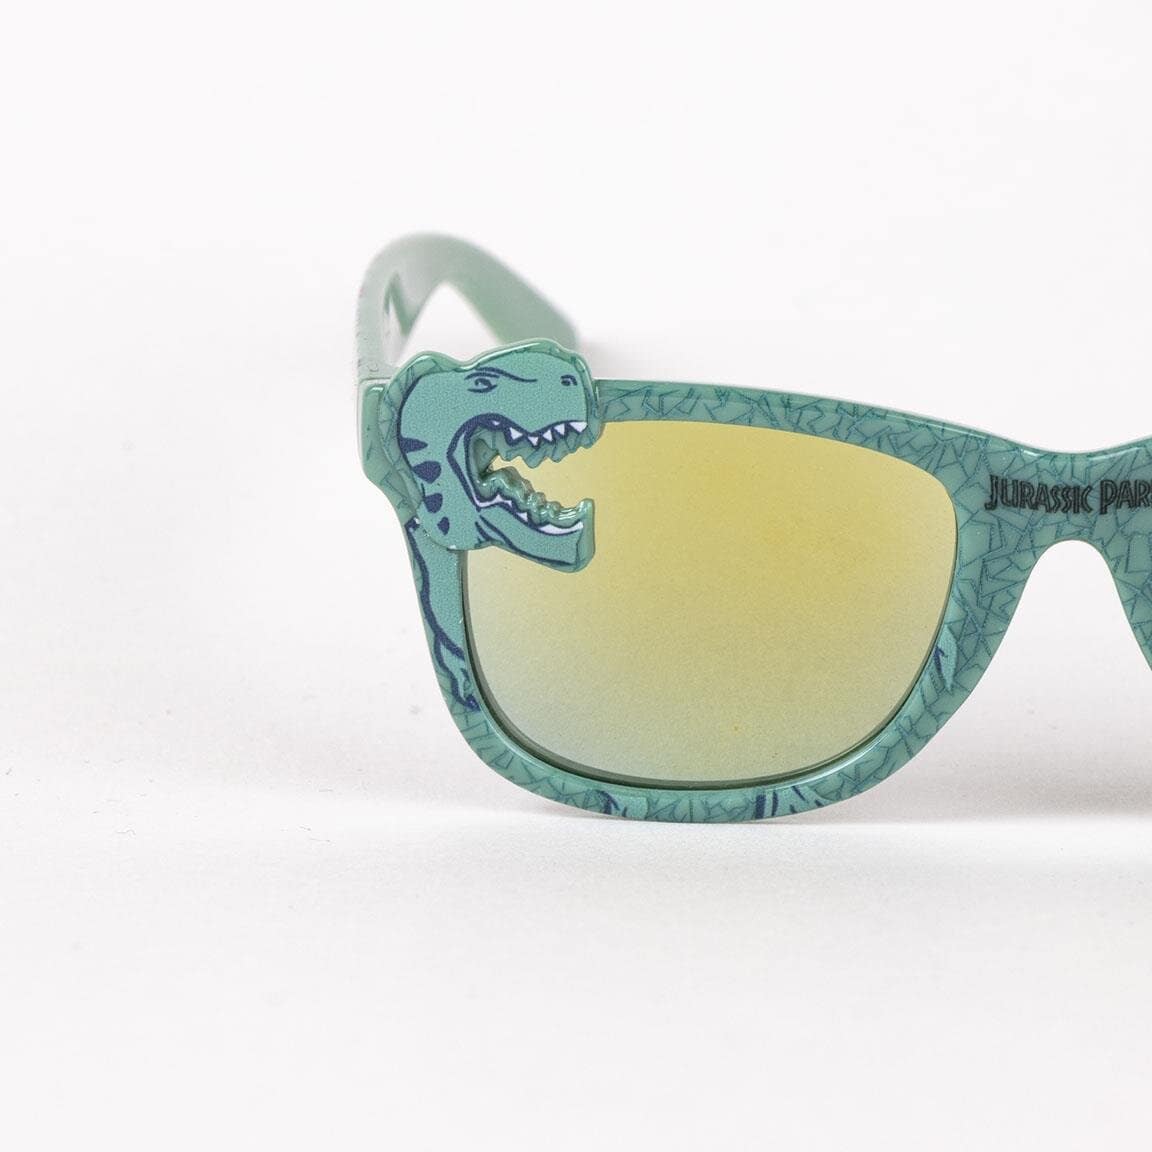 Jurassic Park - Solbriller til barn